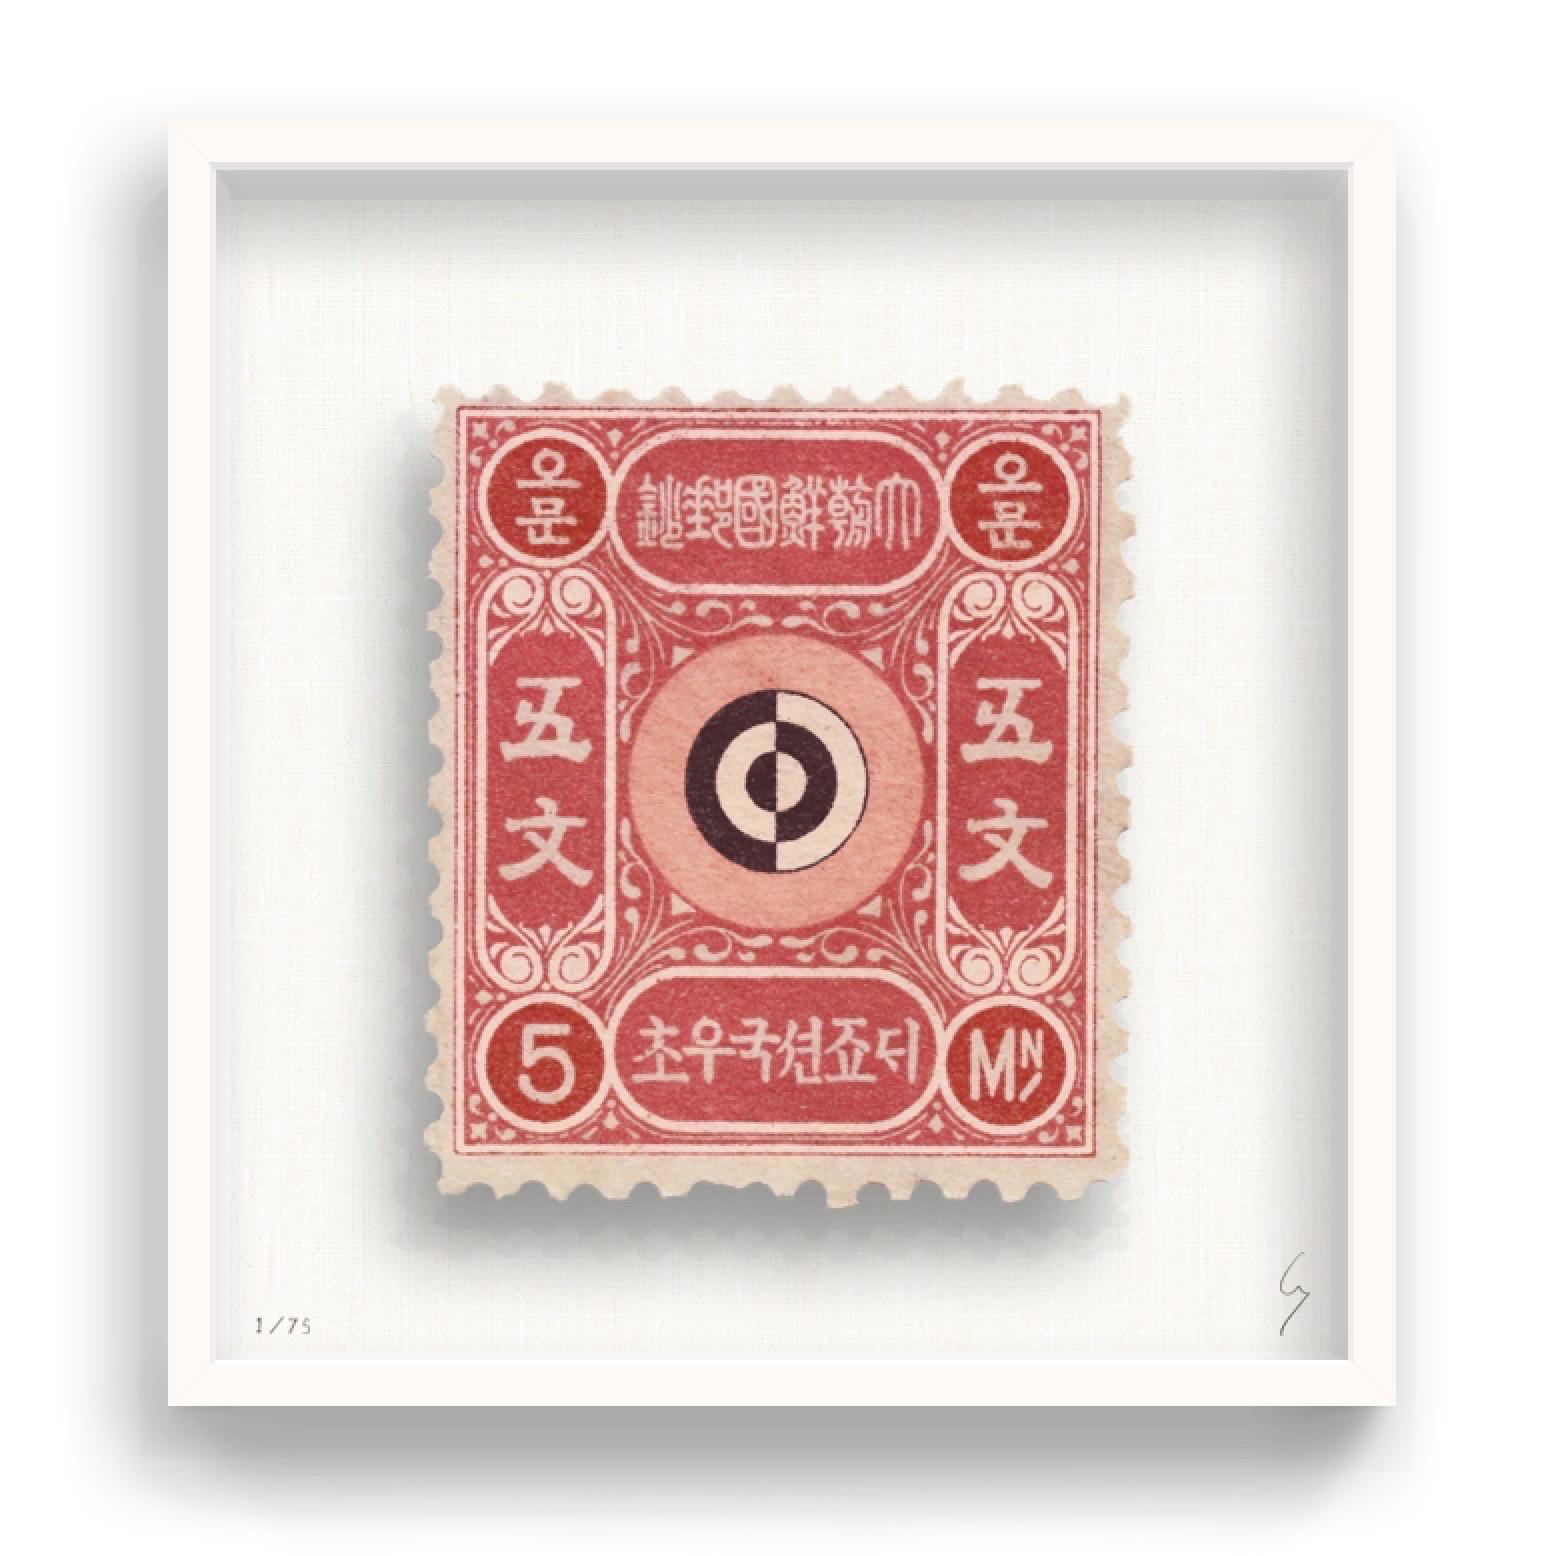 Guy Gee, Korea (mittelgroß)

Handgravur auf 350gsm auf G.F Smith Karton
53 x 56cm (20 4/5 x 22 2/5 in)
Inklusive Rahmen 
Auflage von 75 

Jedes Kunstwerk von Guy wurde auf der Grundlage einer Originalbriefmarke digital nachgebildet. Das von Hand